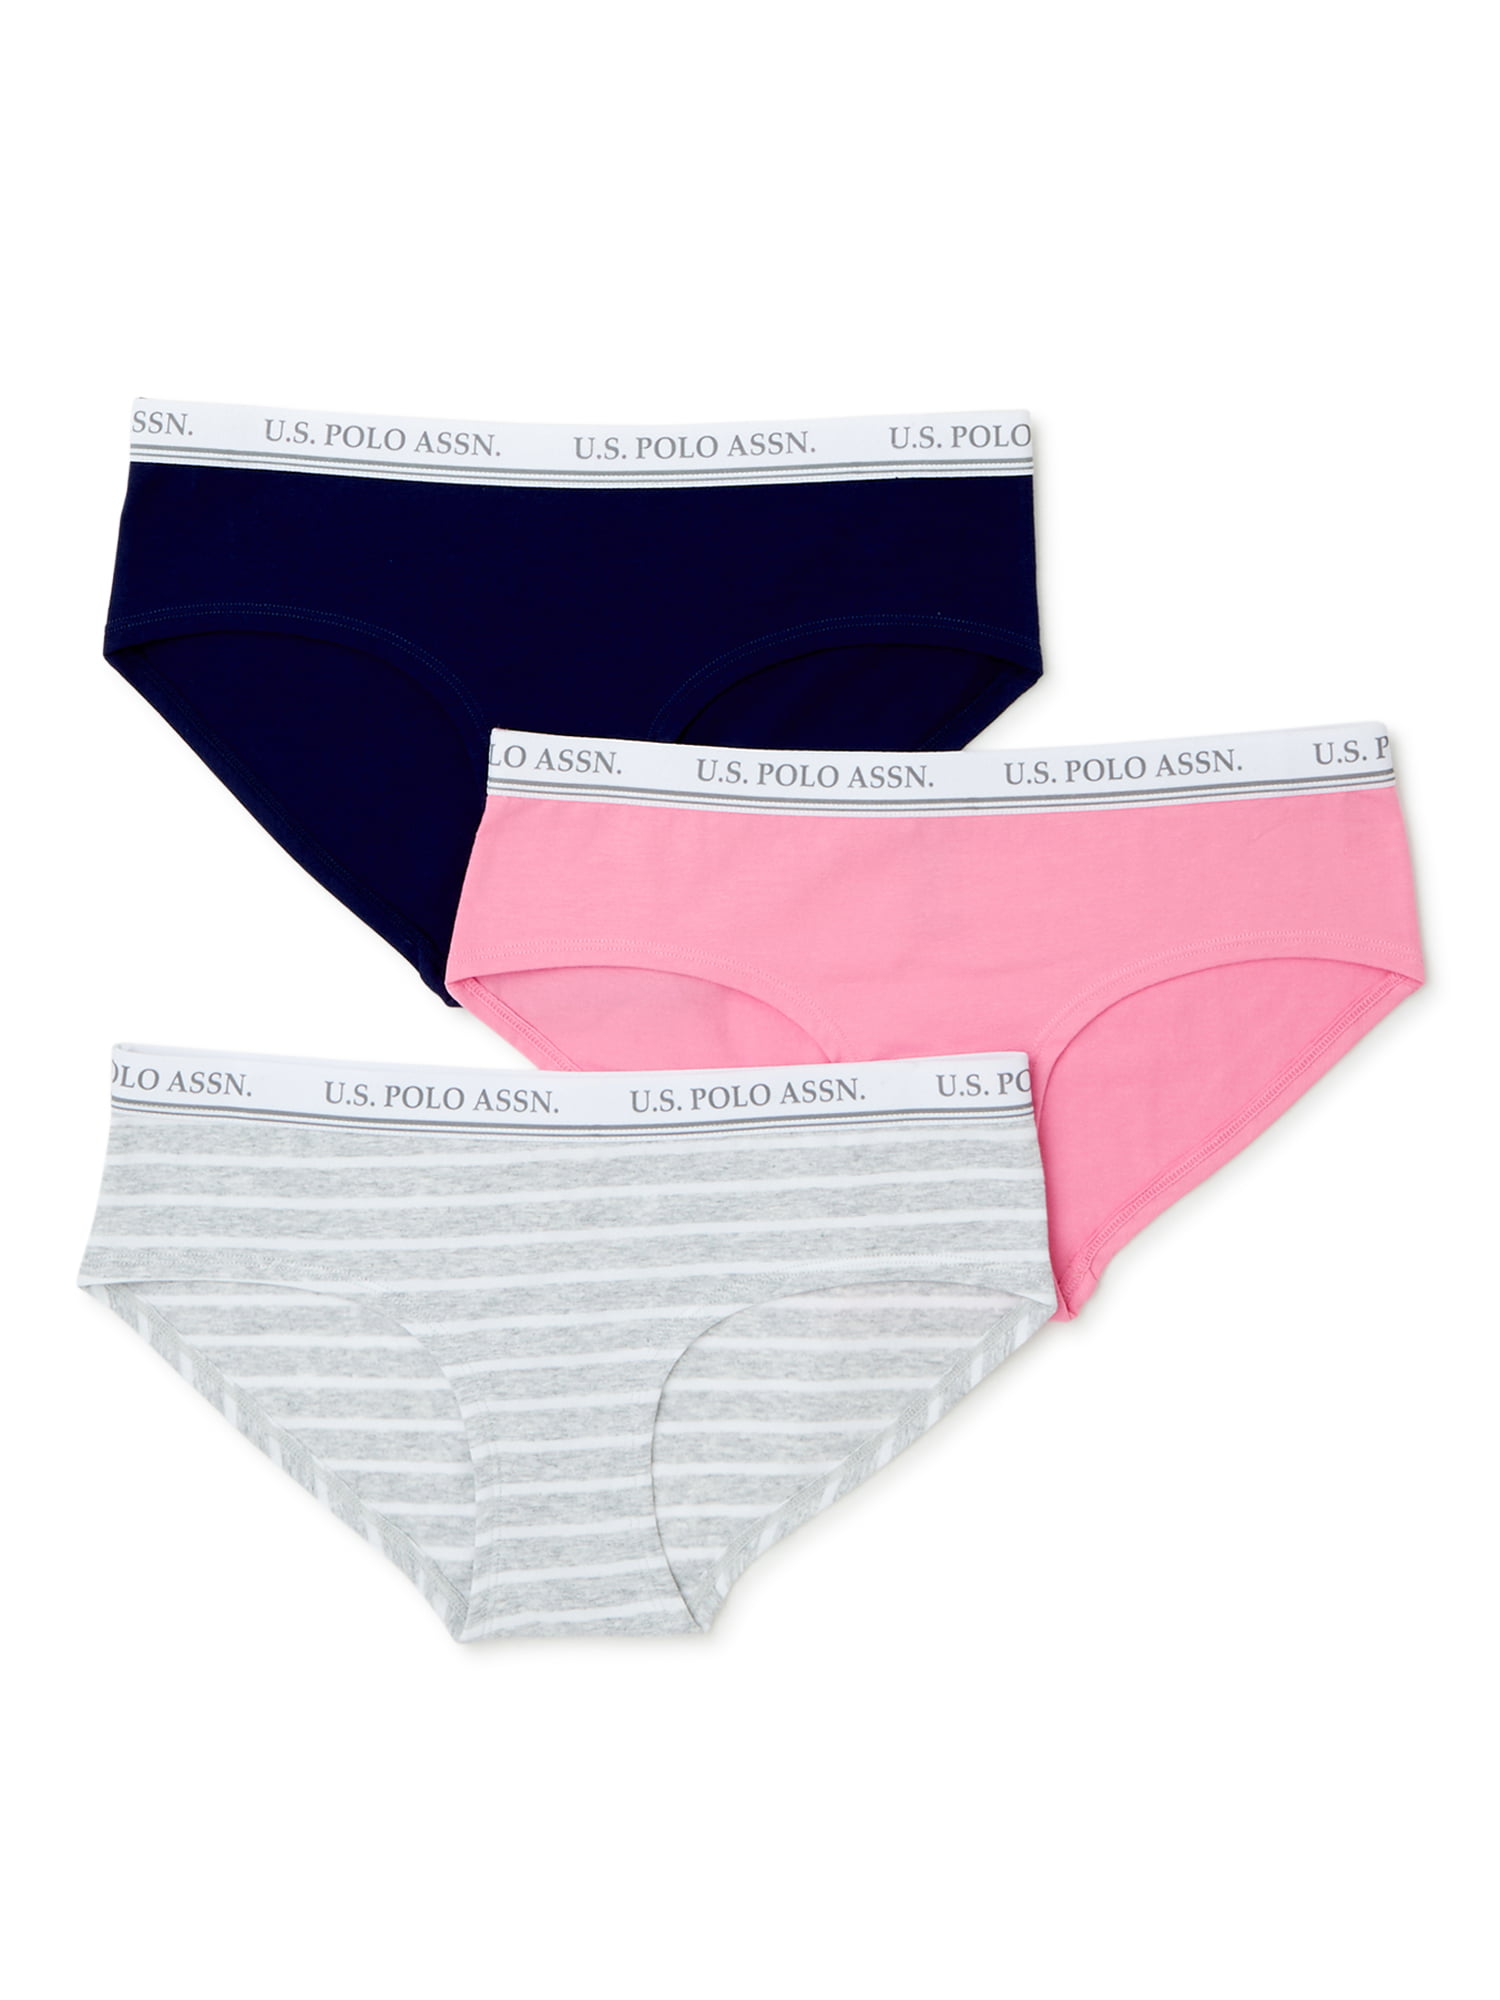 U.S. Polo Assn. Women's Cotton Boyleg Briefs Underwear Set, 3-Pack